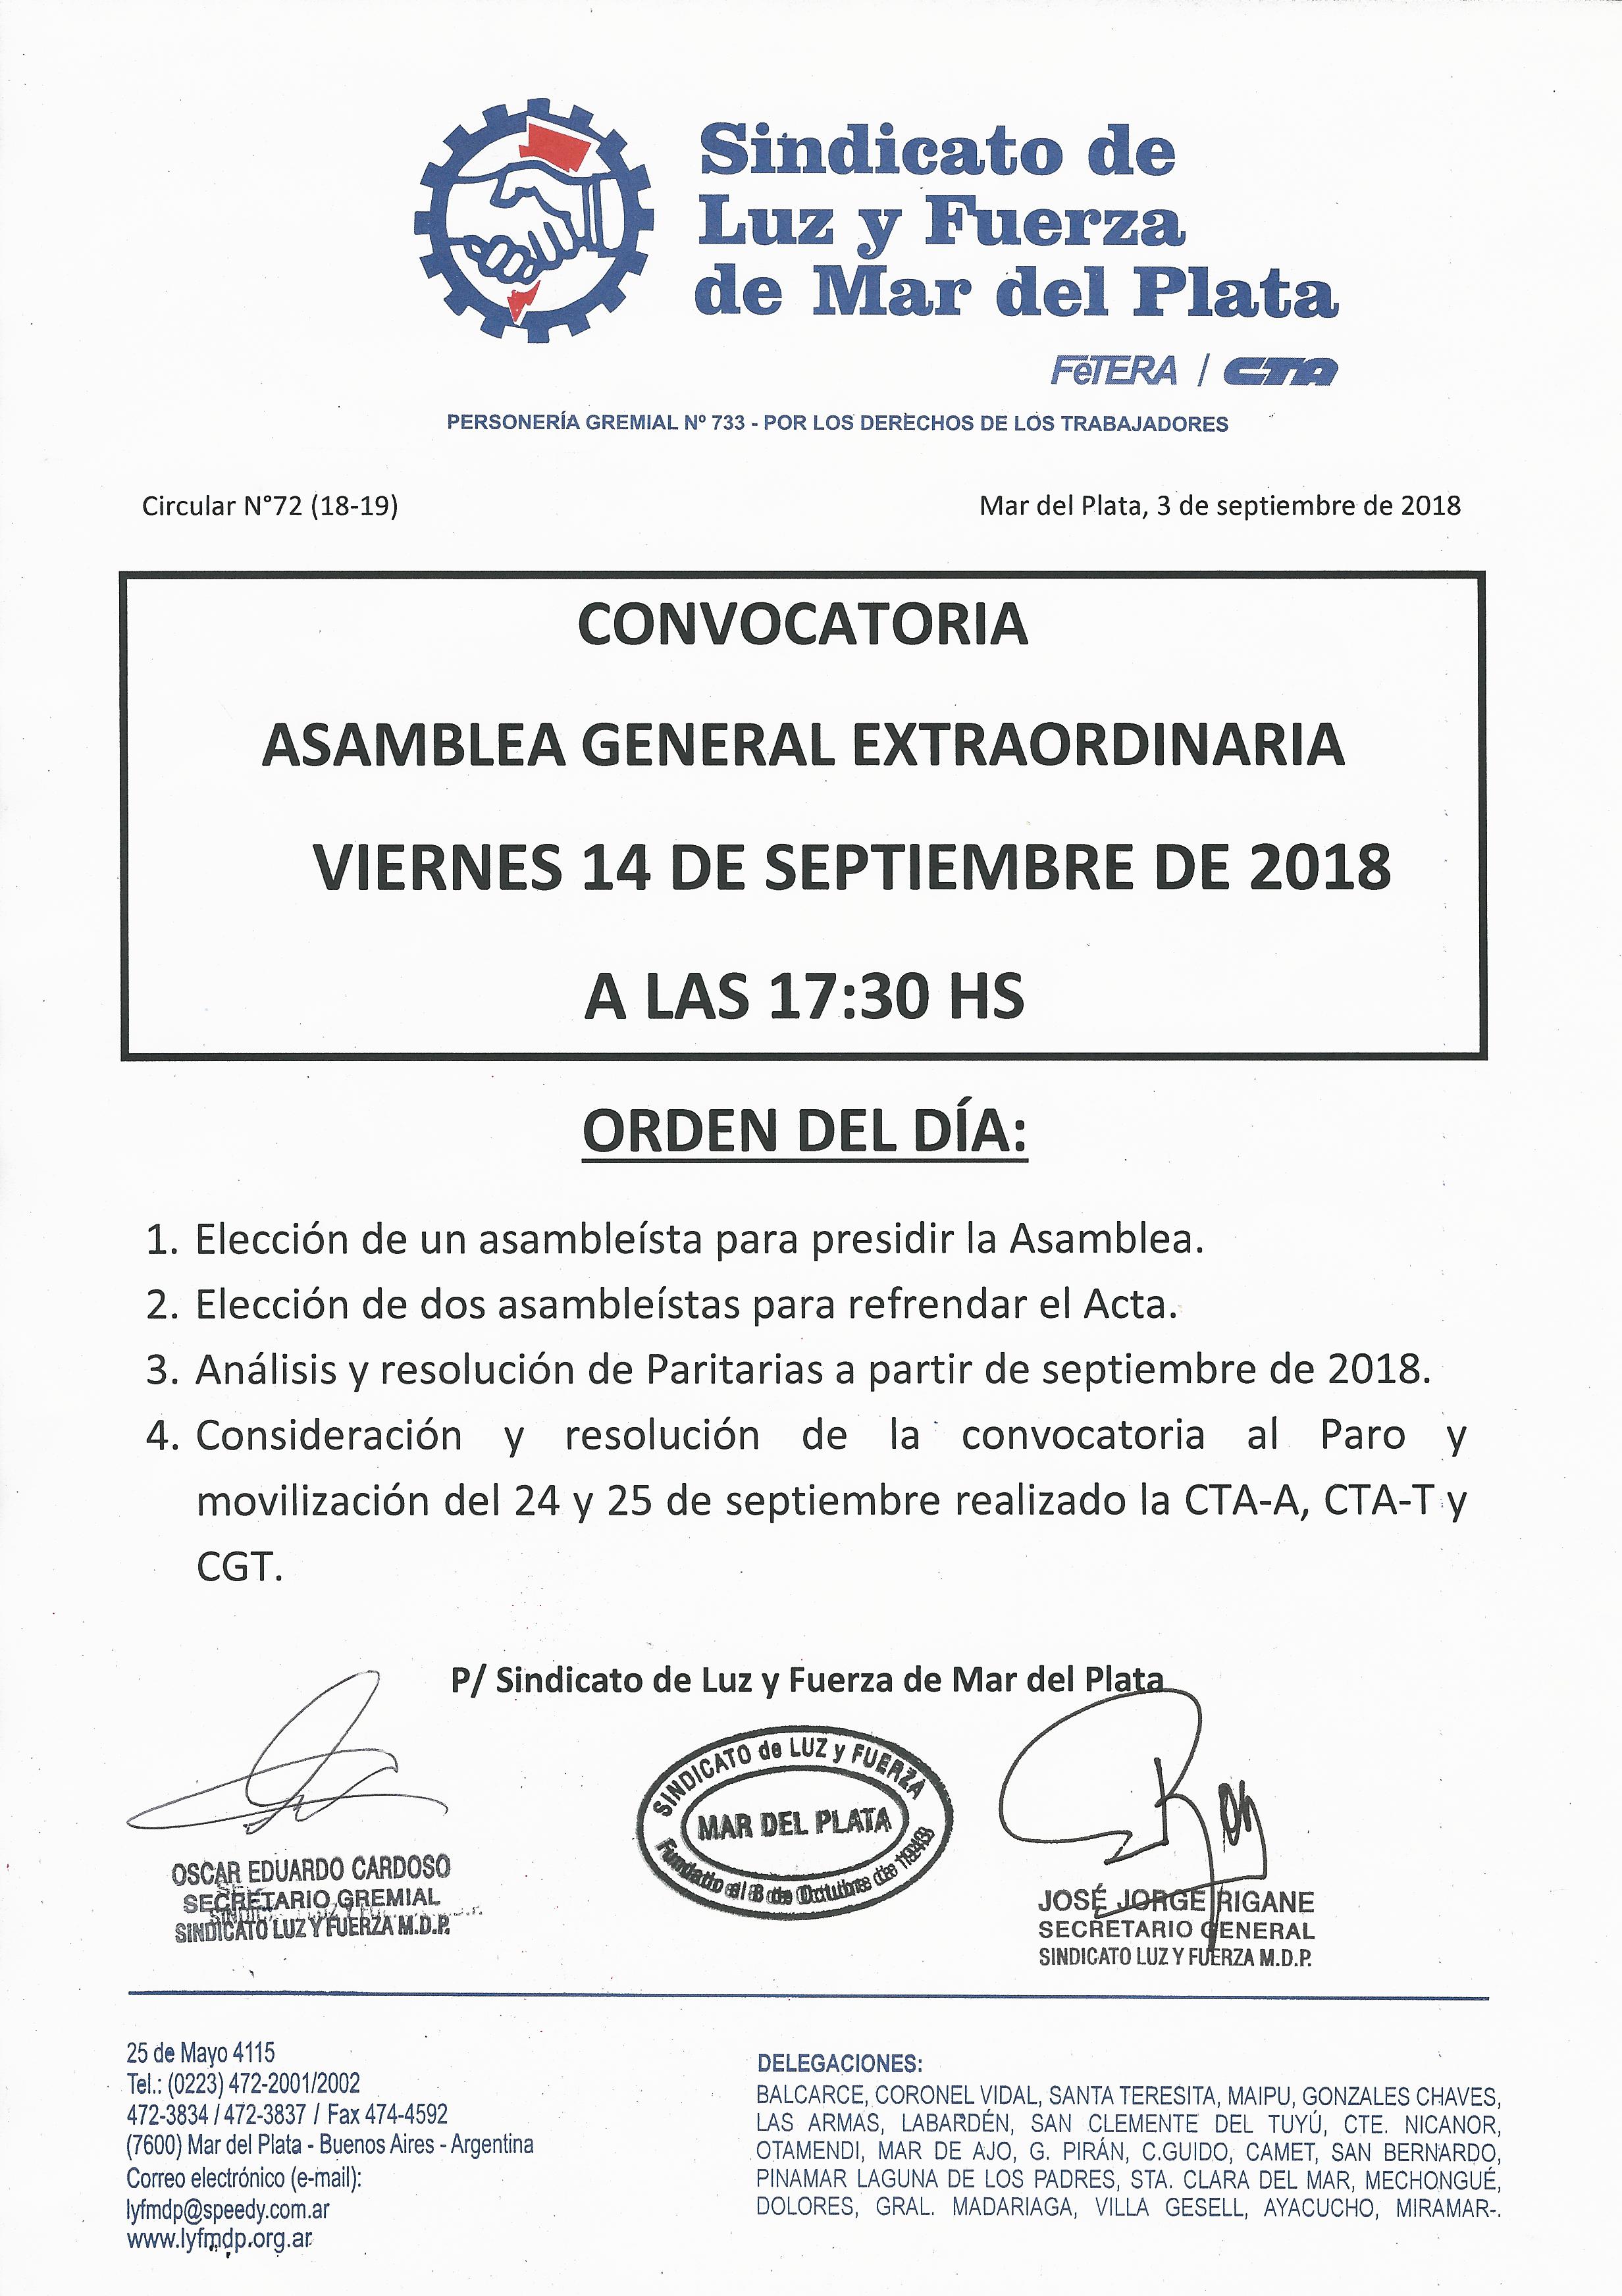 CONVOCATORIA A.G.E. 14 DE SEPTIEMBRE DE 2019